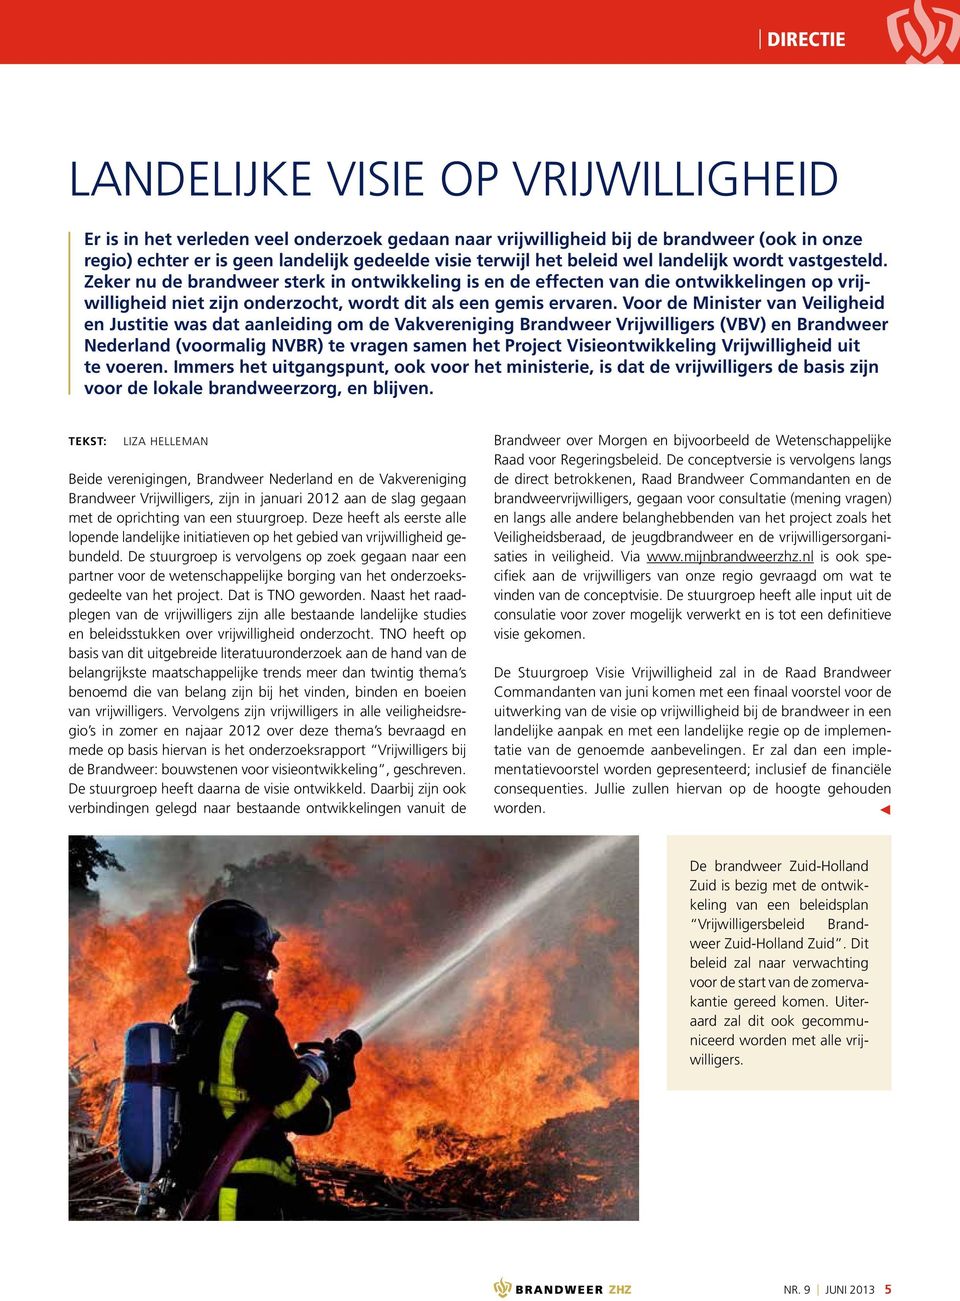 Voor de Minister van Veiligheid en Justitie was dat aanleiding om de Vakvereniging Brandweer Vrijwilligers (VBV) en Brandweer Nederland (voormalig NVBR) te vragen samen het Project Visieontwikkeling